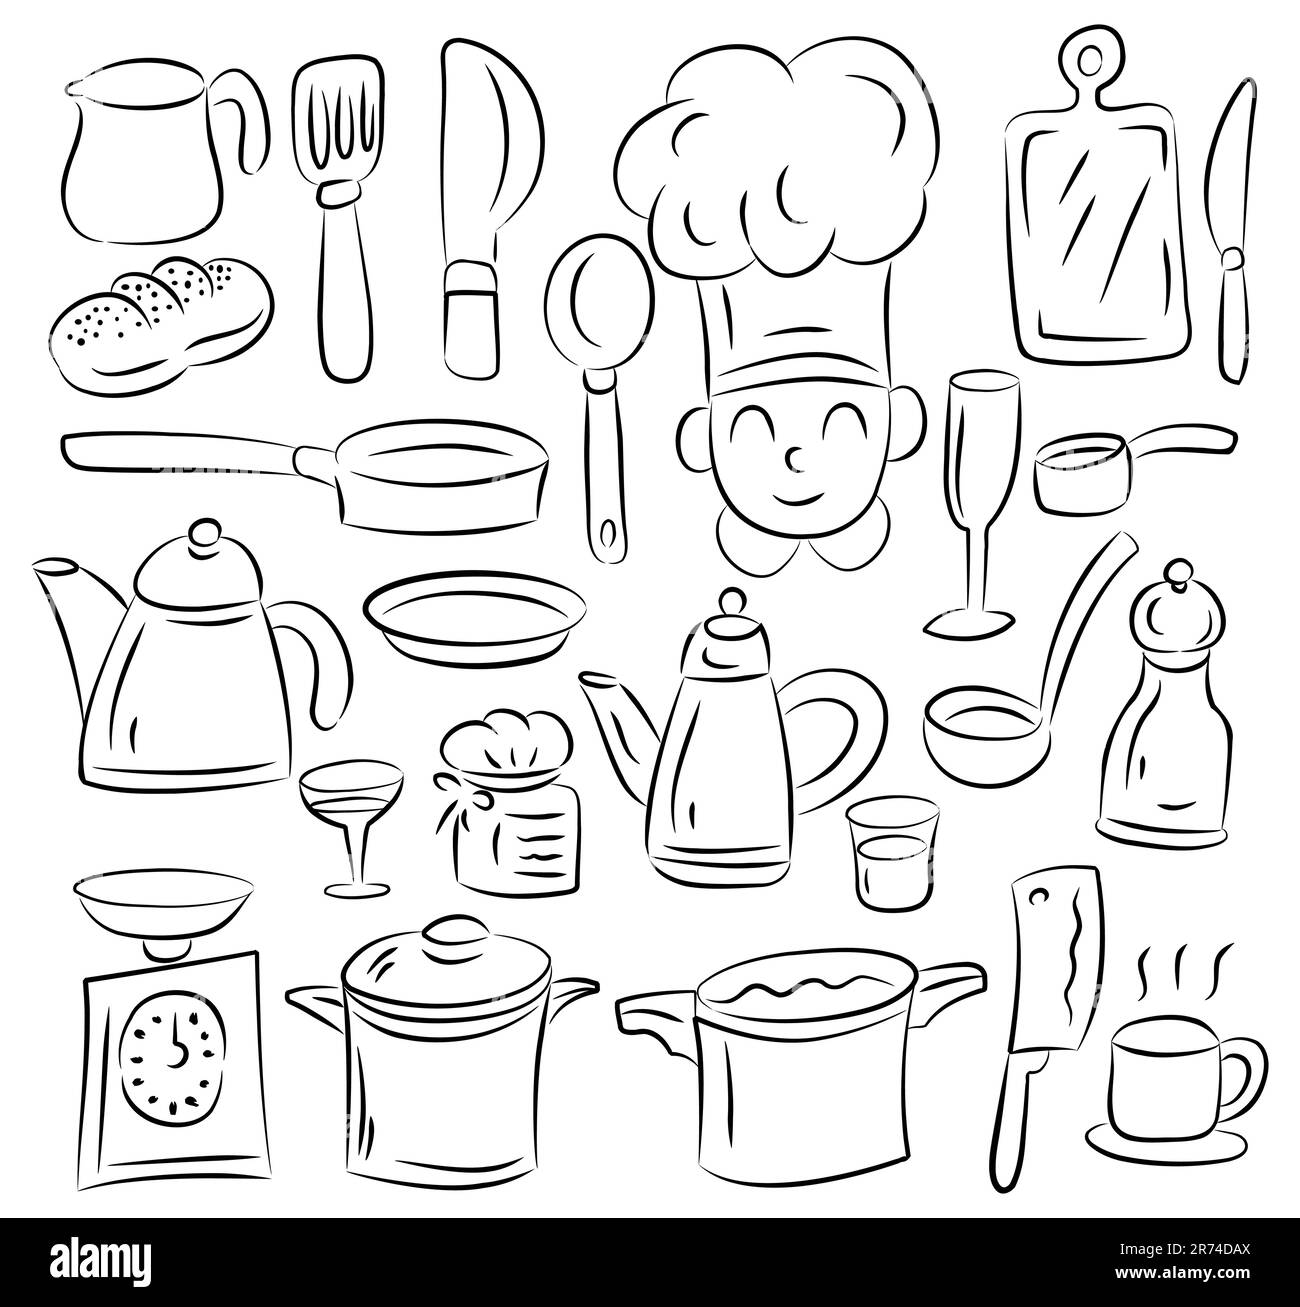 Báscula plana de cocina para comida aislada o icono de balanza de peso  digital recortada clipart gráfico de dibujos animados